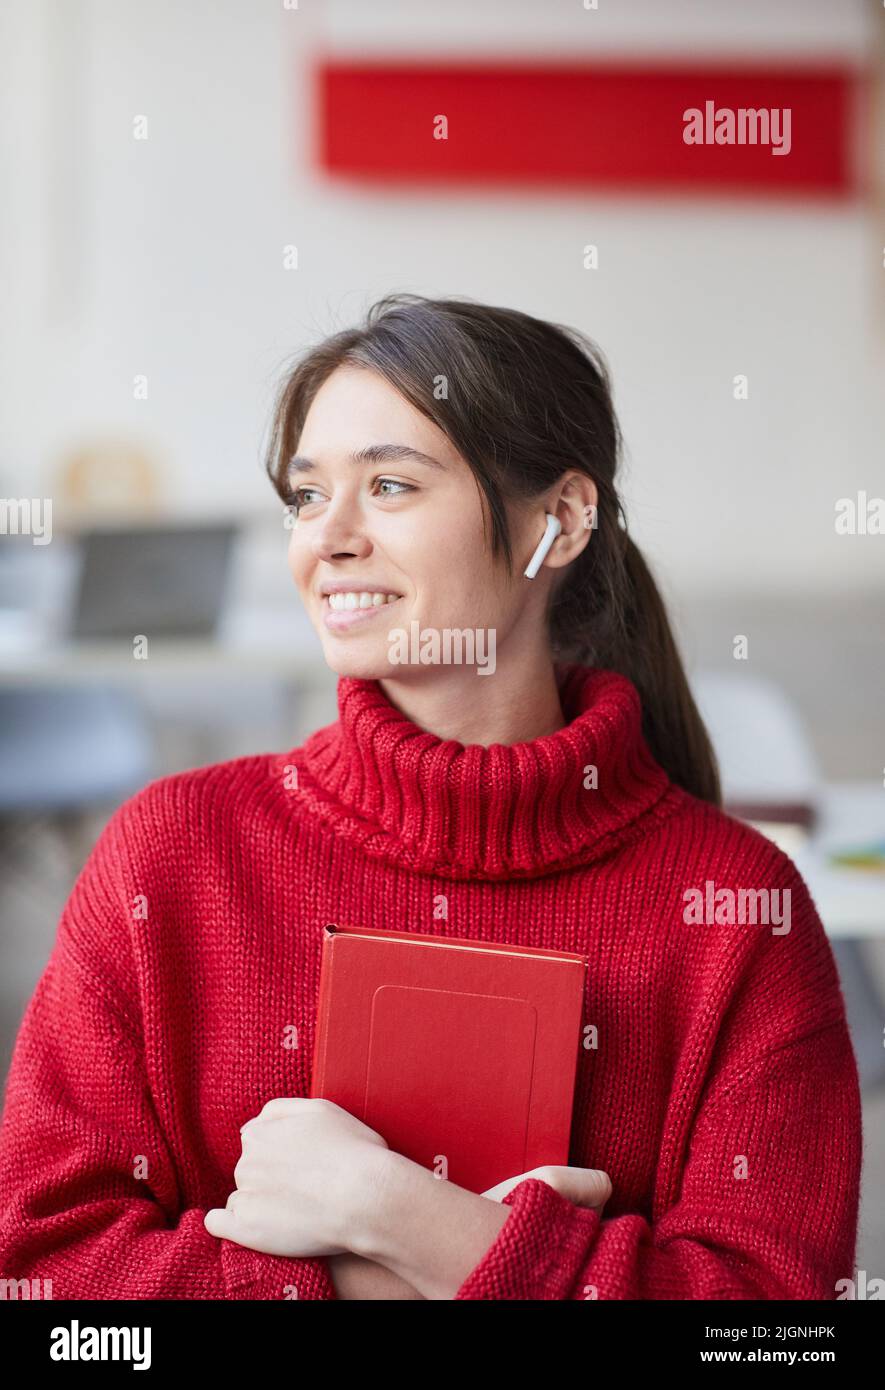 Bella ragazza stilista positiva con auricolari wireless indossando maglia rossa maglione che abbraccia personal planner e guardare via Foto Stock